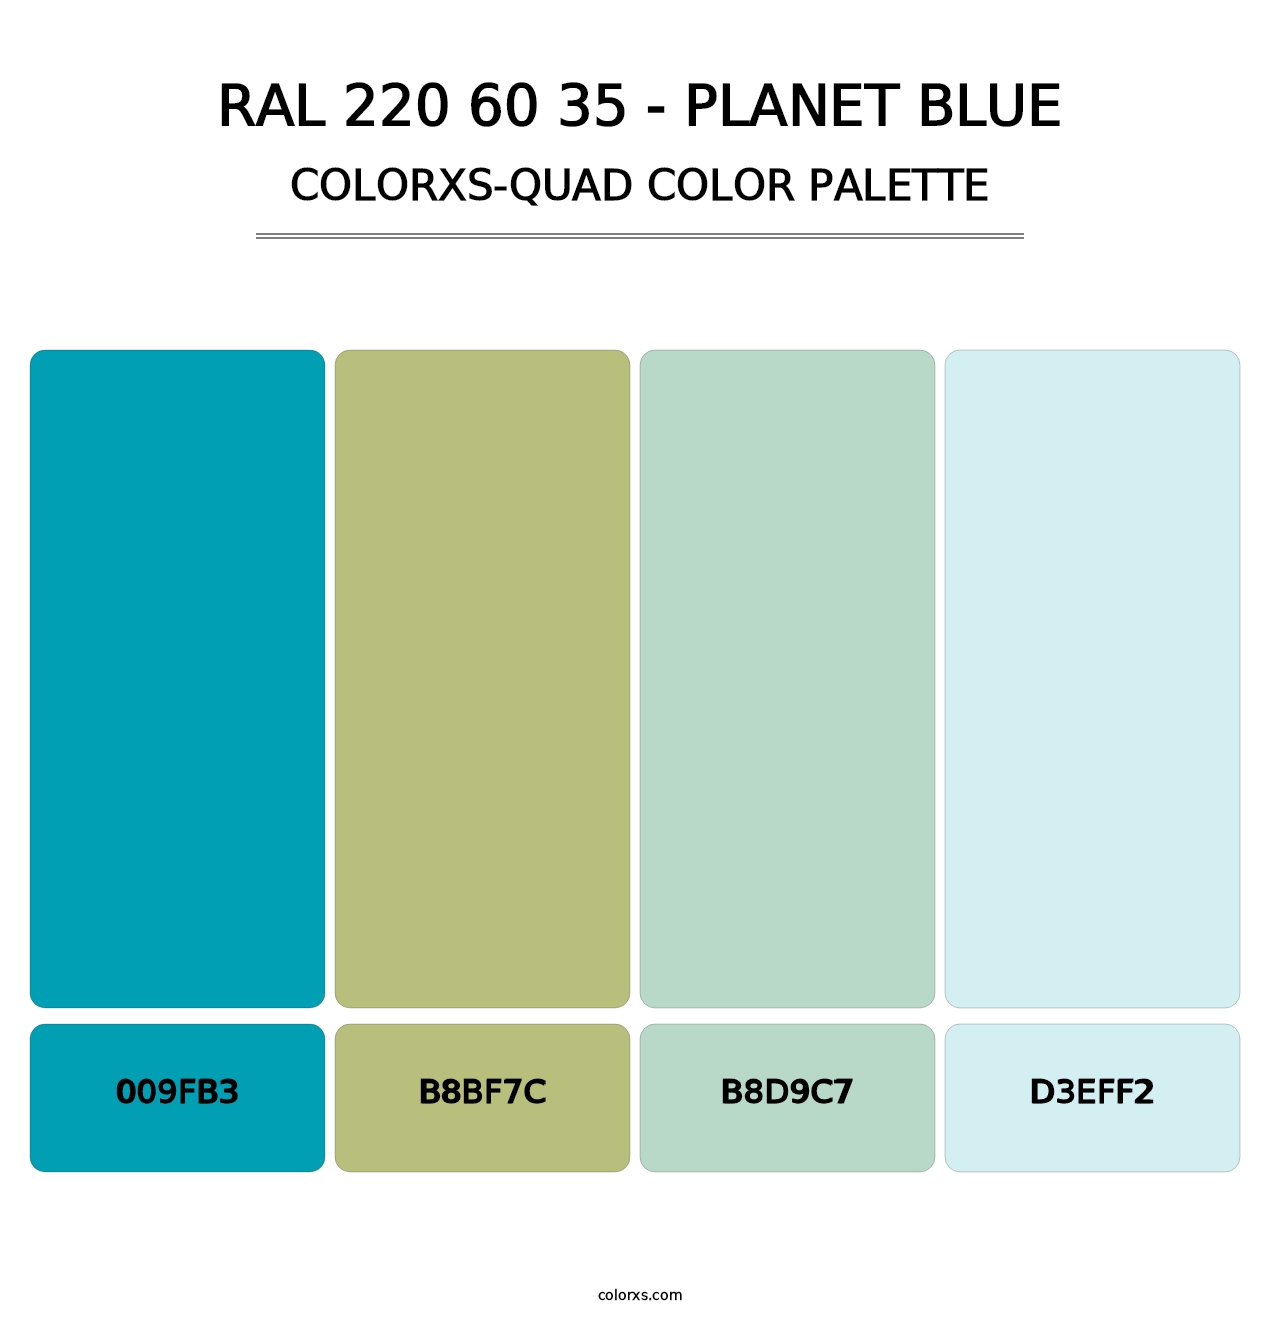 RAL 220 60 35 - Planet Blue - Colorxs Quad Palette